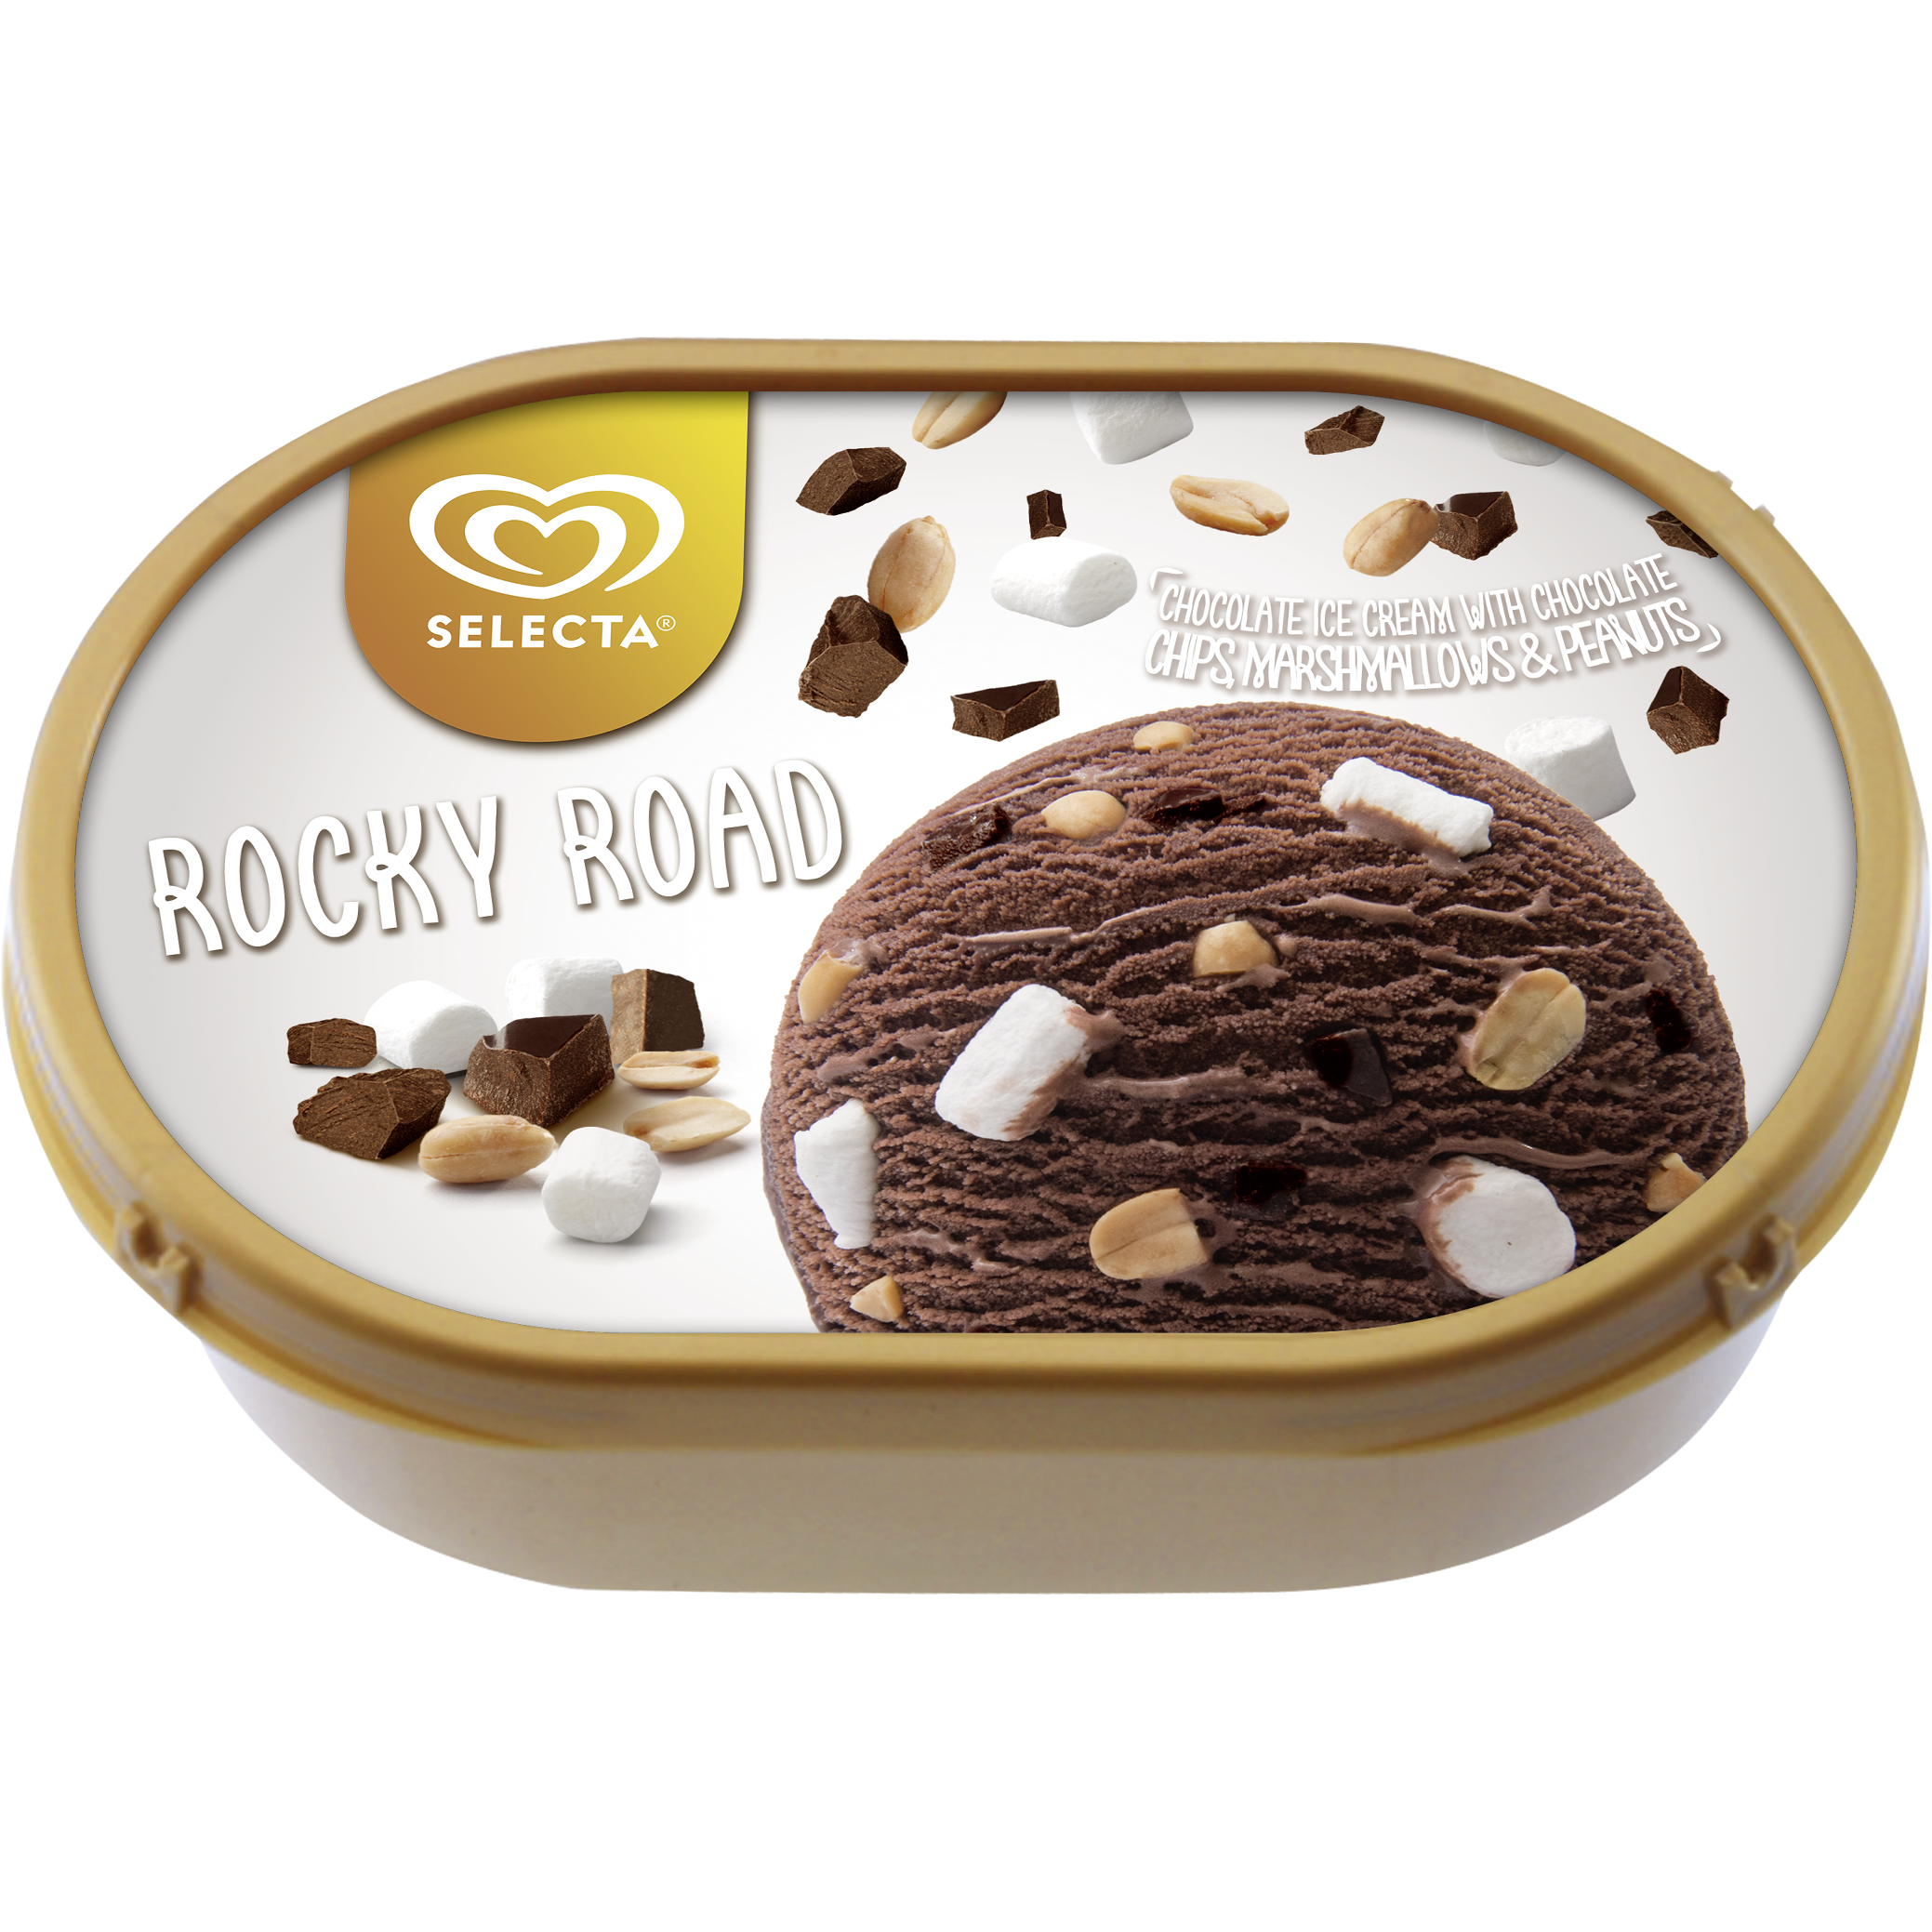 Selecta Supreme Rocky Road Ice Cream